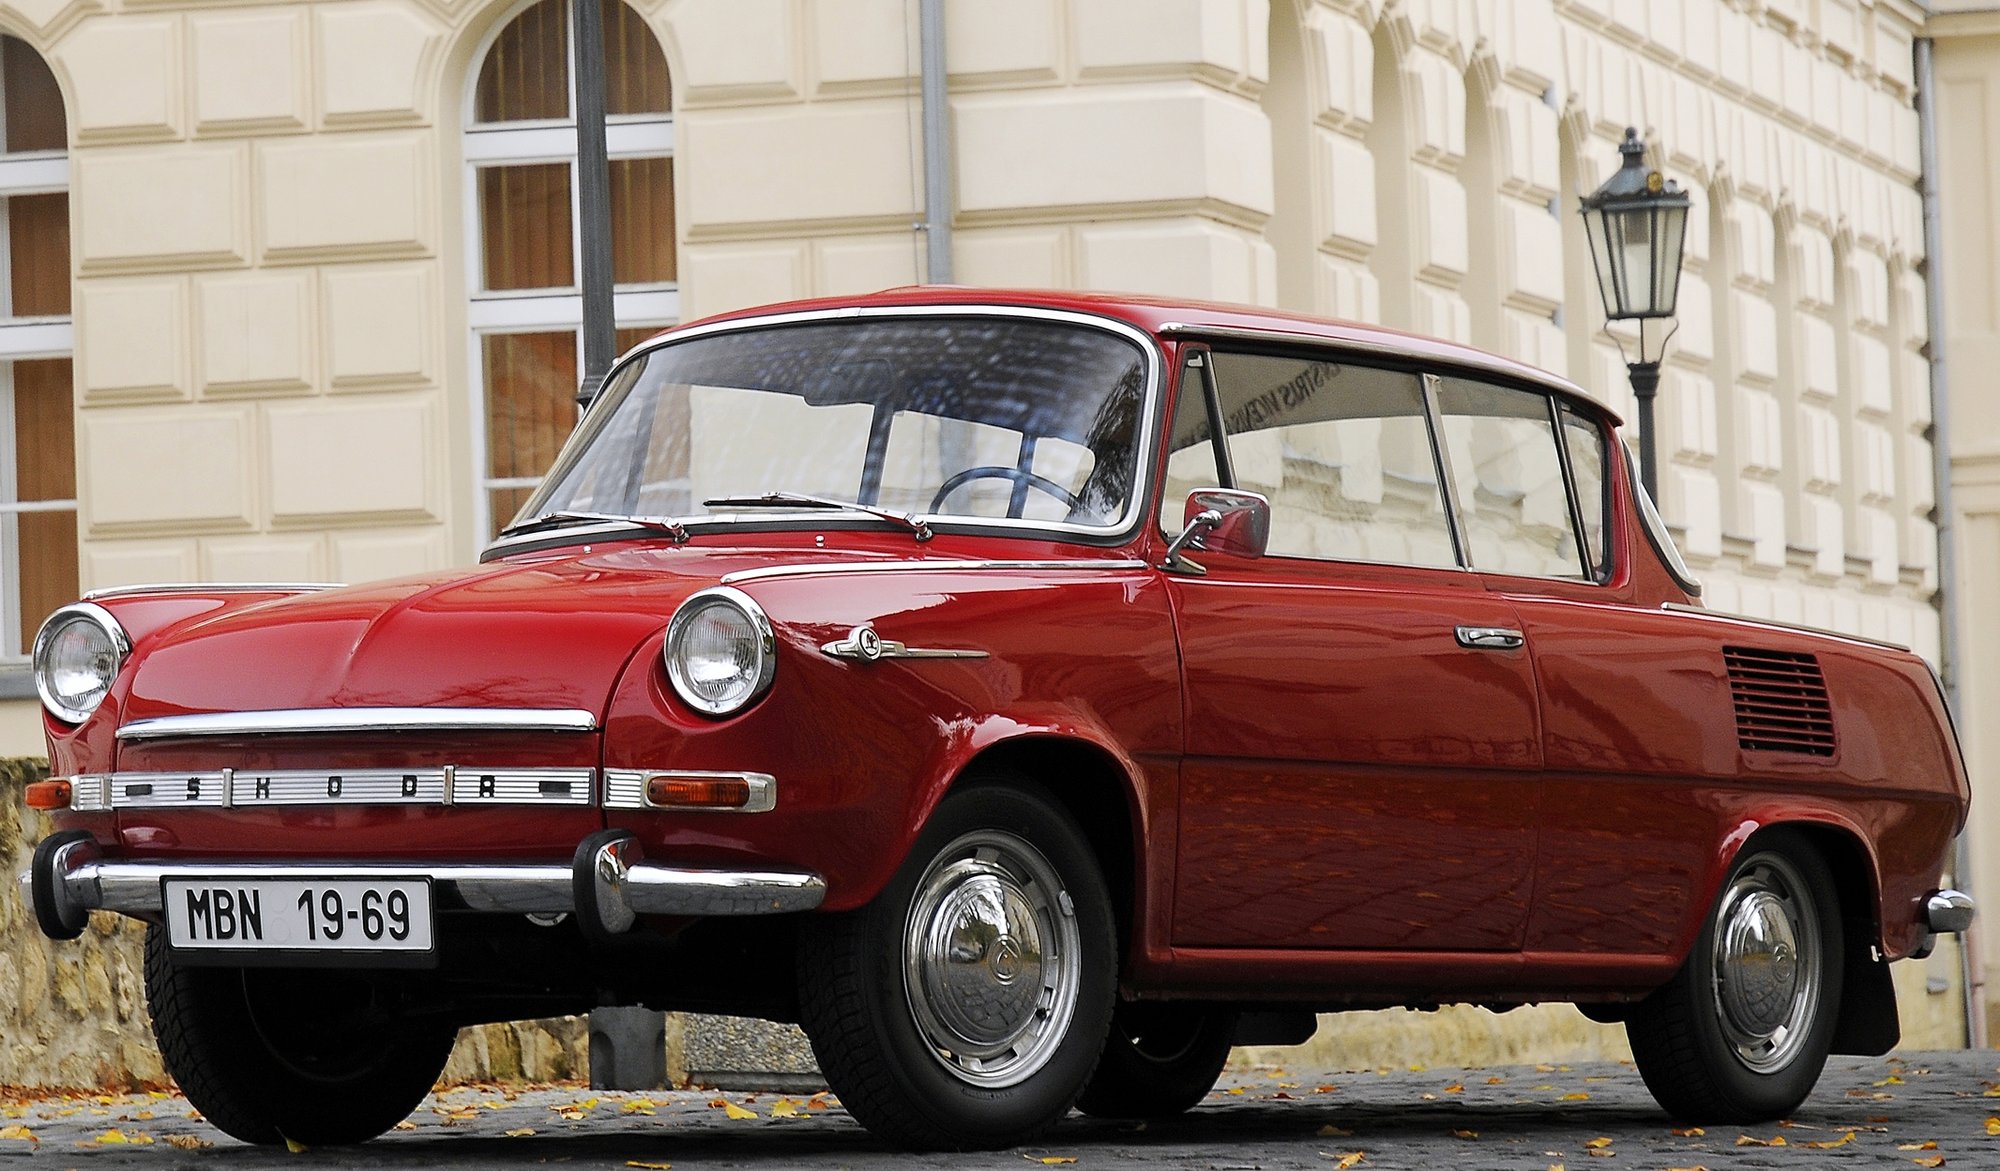 Hlavním tématem letošní automobilové slavnosti LEGENDY je oslava 100 let Československé republiky.